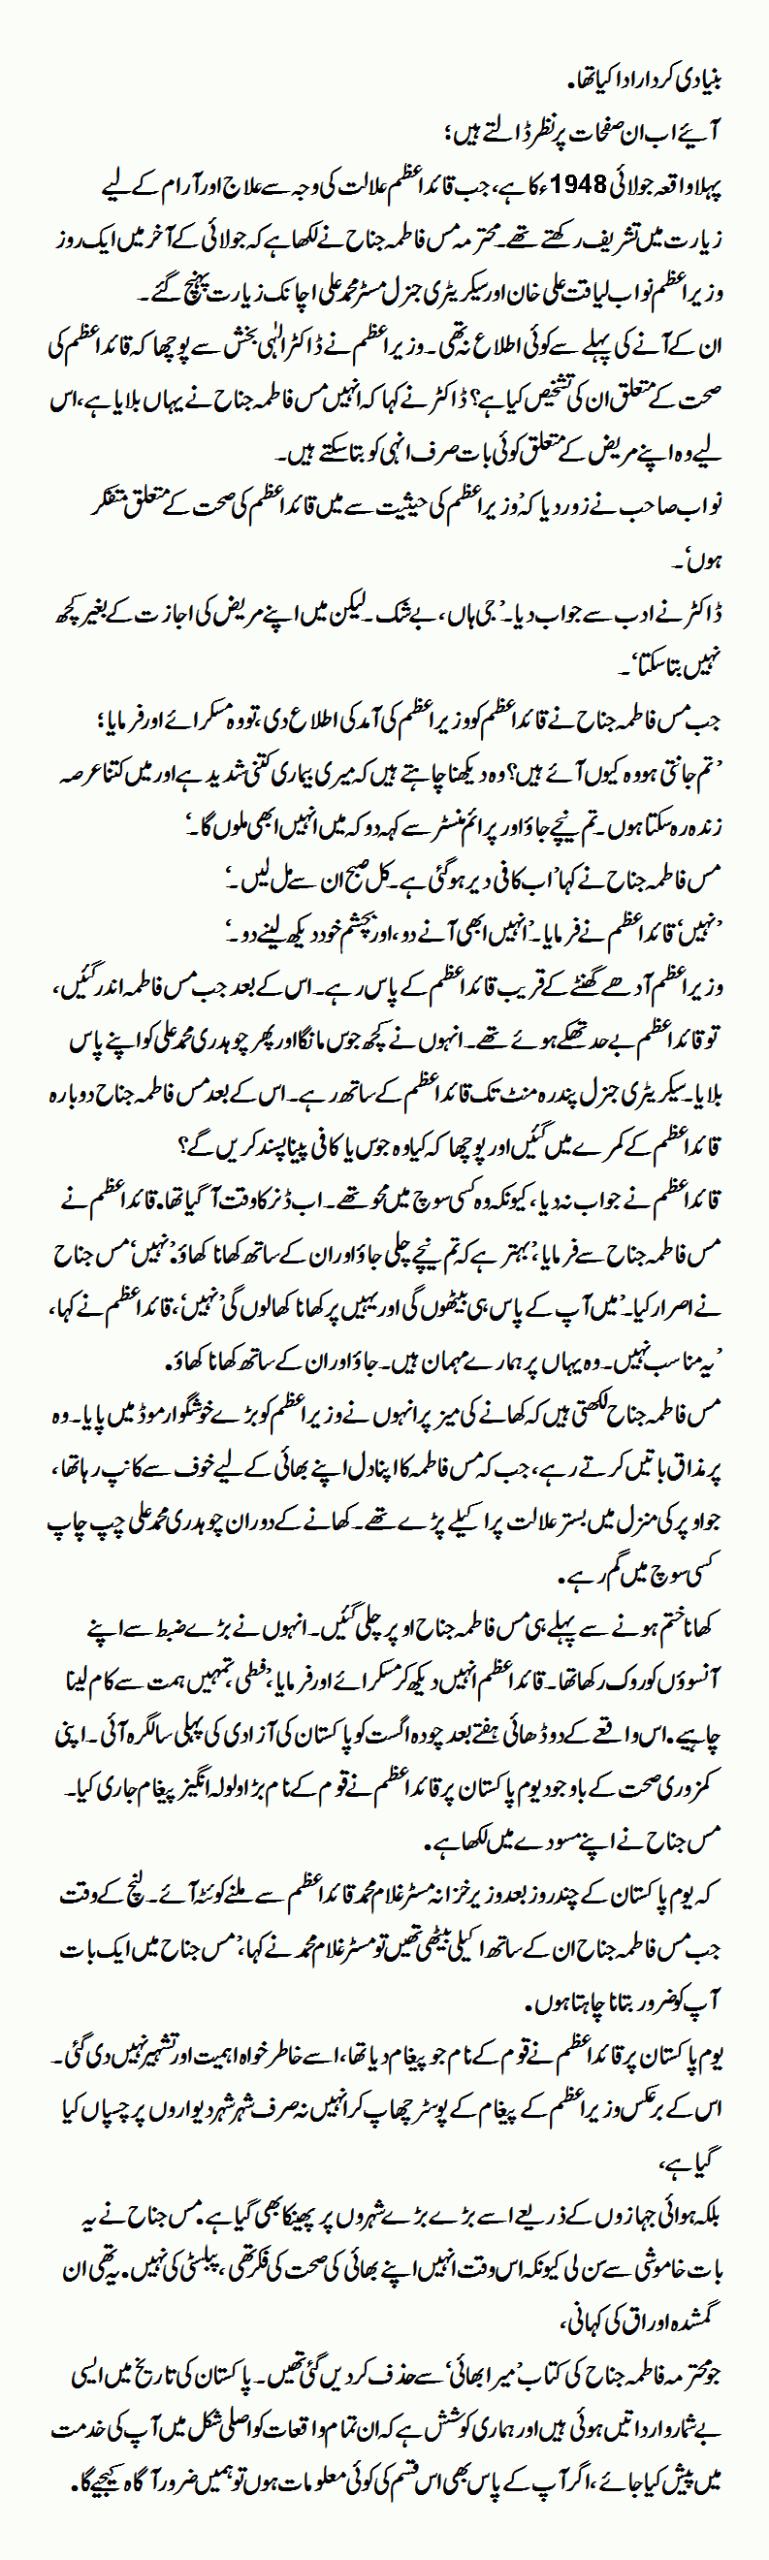 Lost History Of Quaid-e-Azam's Life